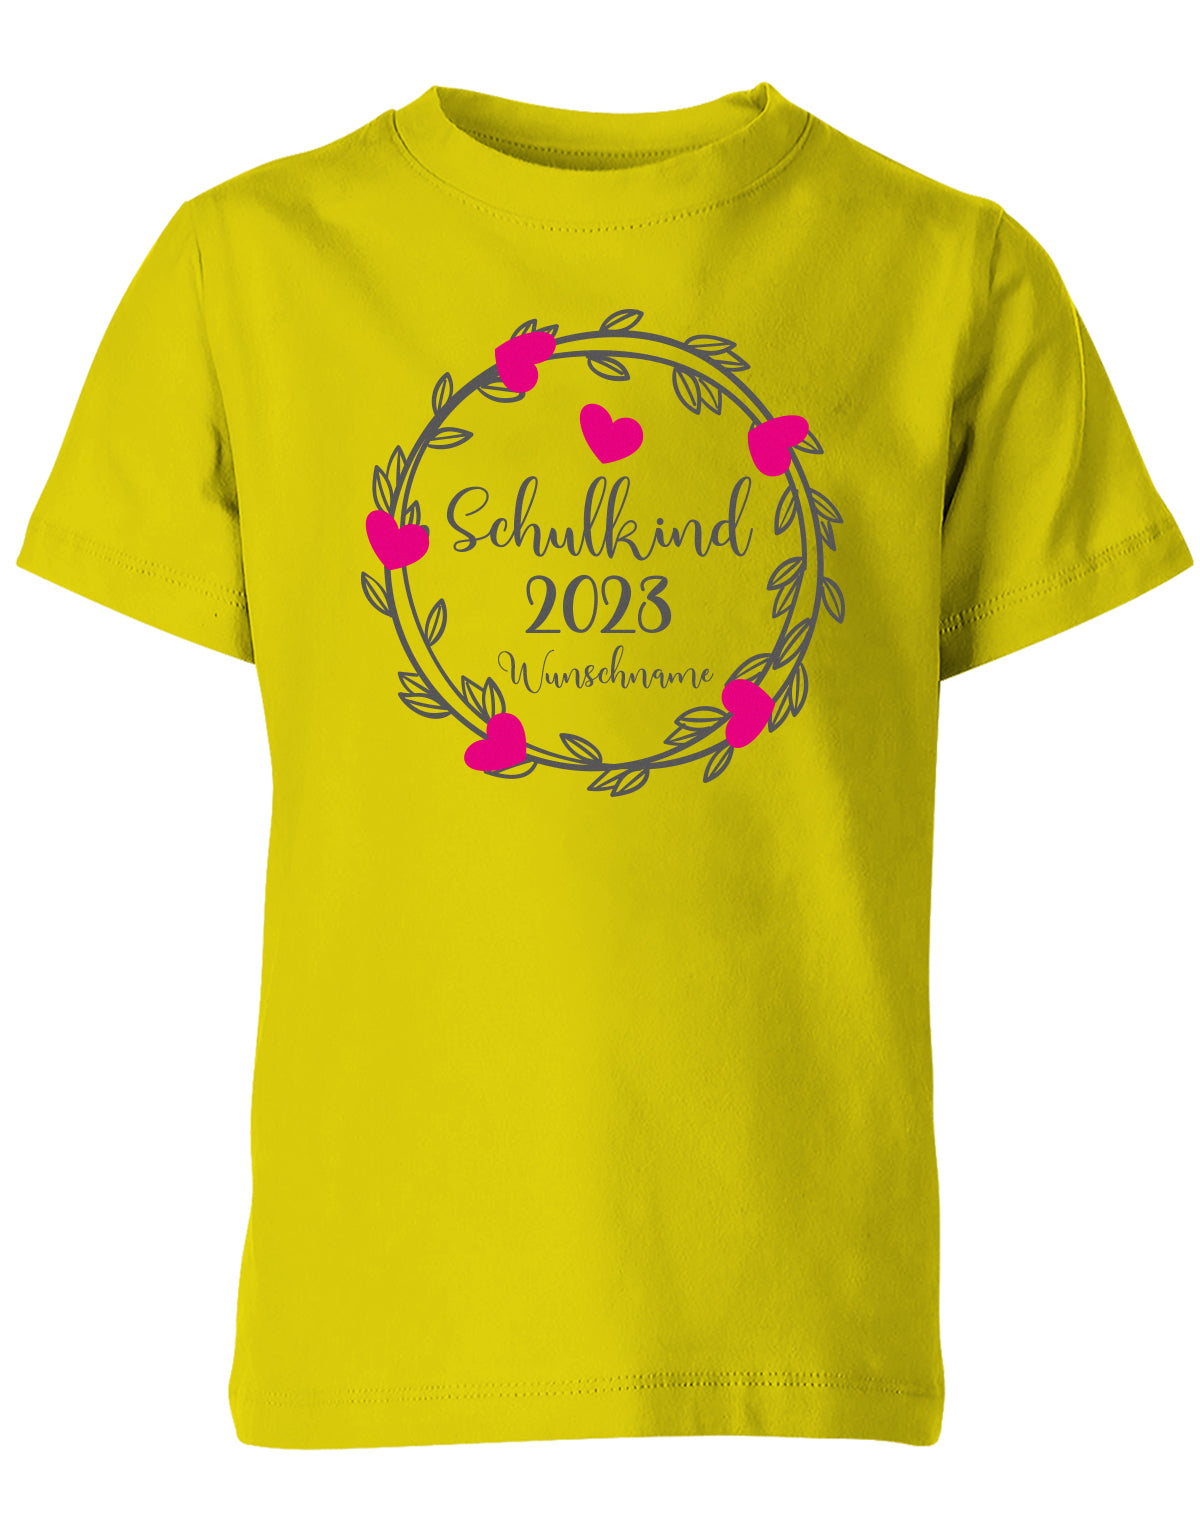 Schulkind 2023 Blumen Herzchen mit Name - Einschulung - Kinder T-Shirt Gelb